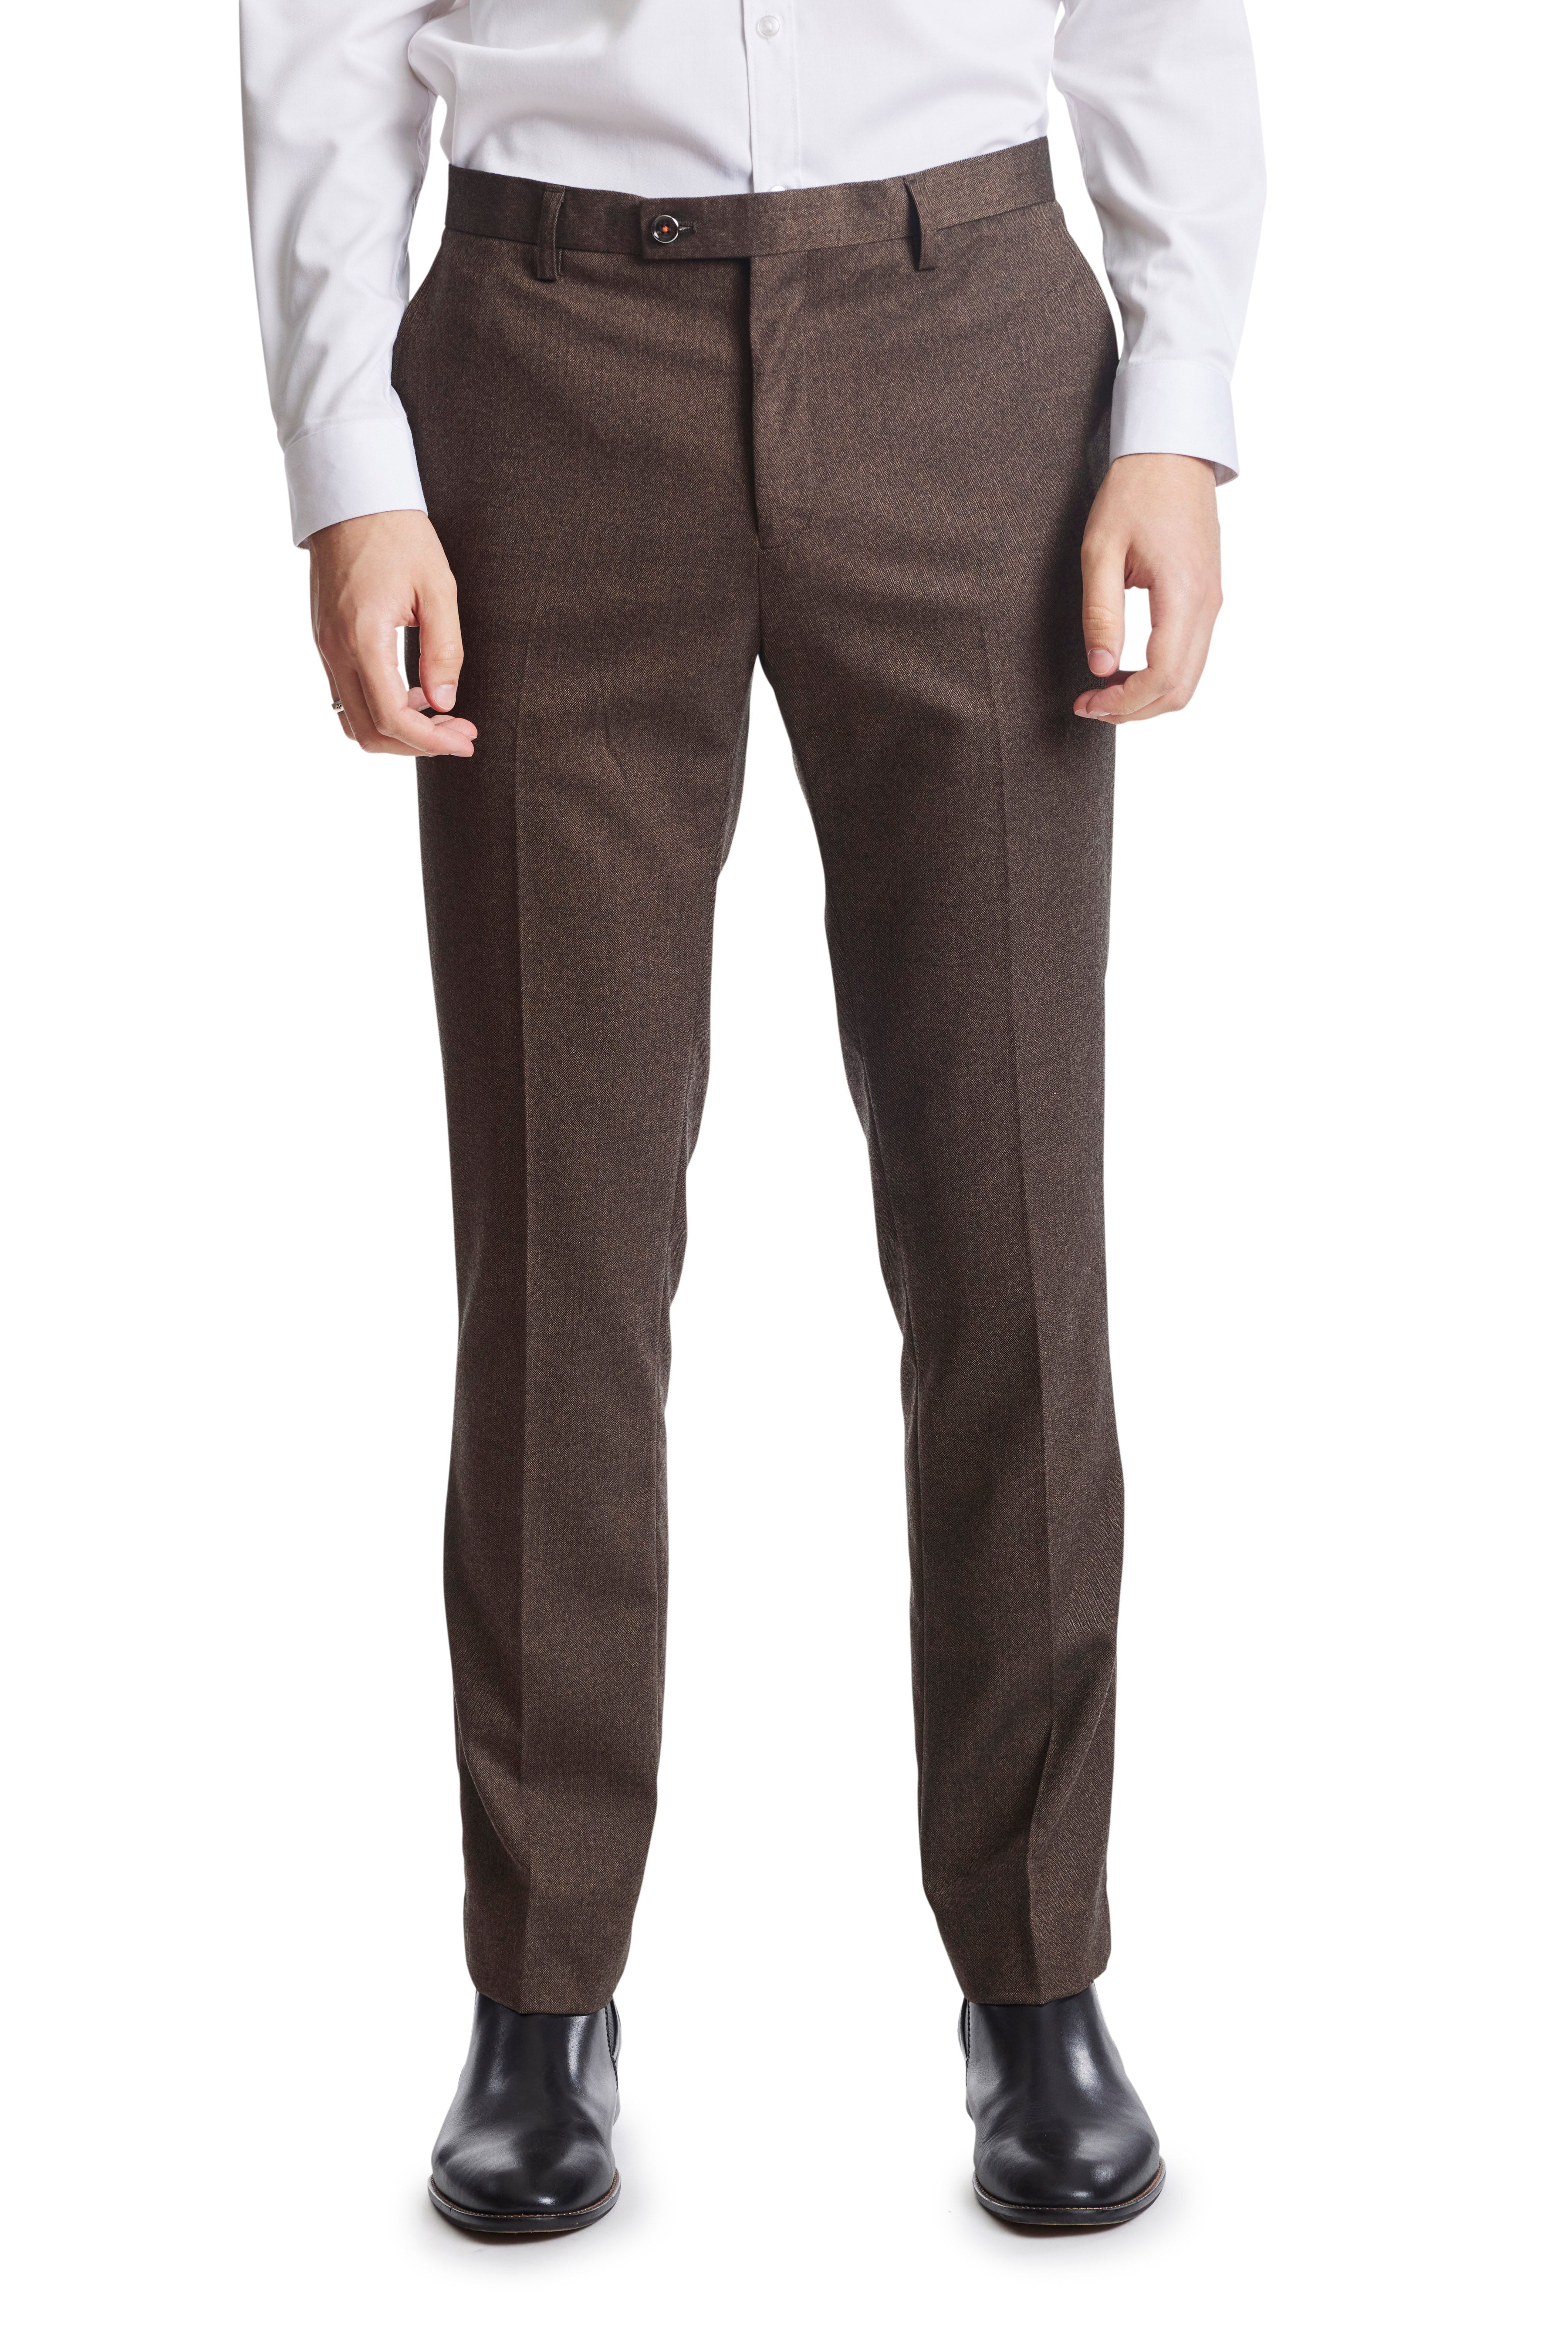 Men's Suit Nine Pants Wool Tweed Herringbone Slim Fit For Wedding Clas –  AnnaCustomDress